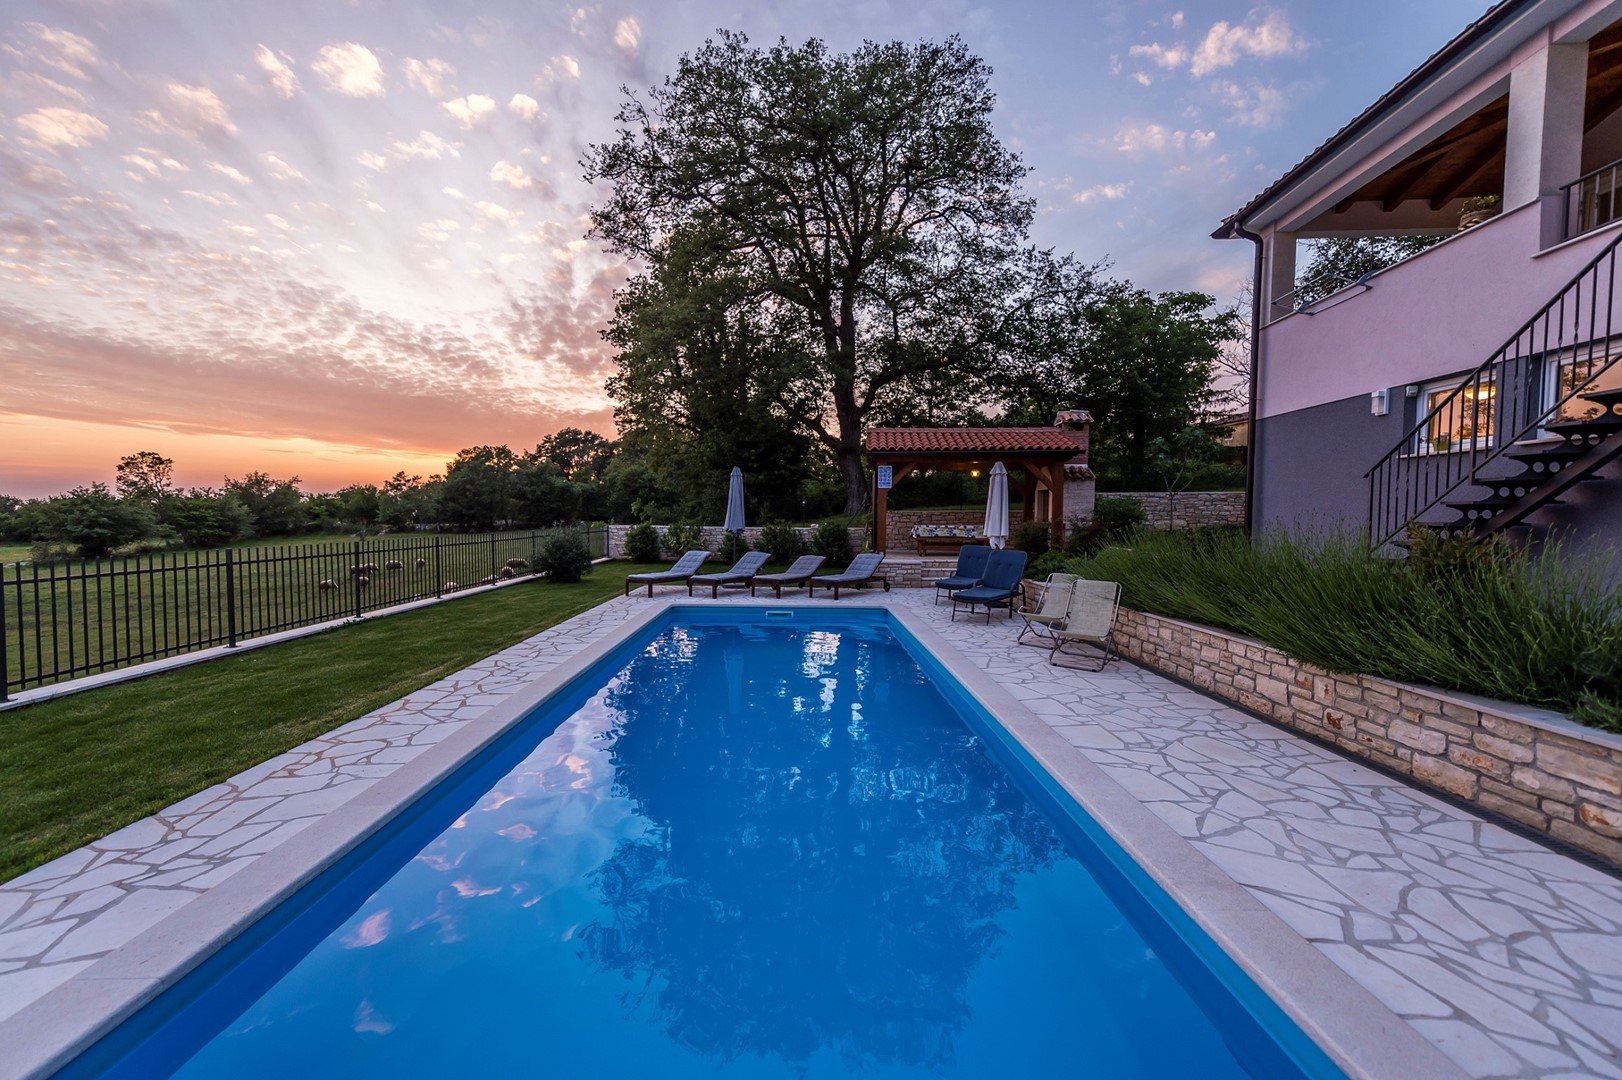 Ferienhaus Vesna mit Pool  in Kroatien